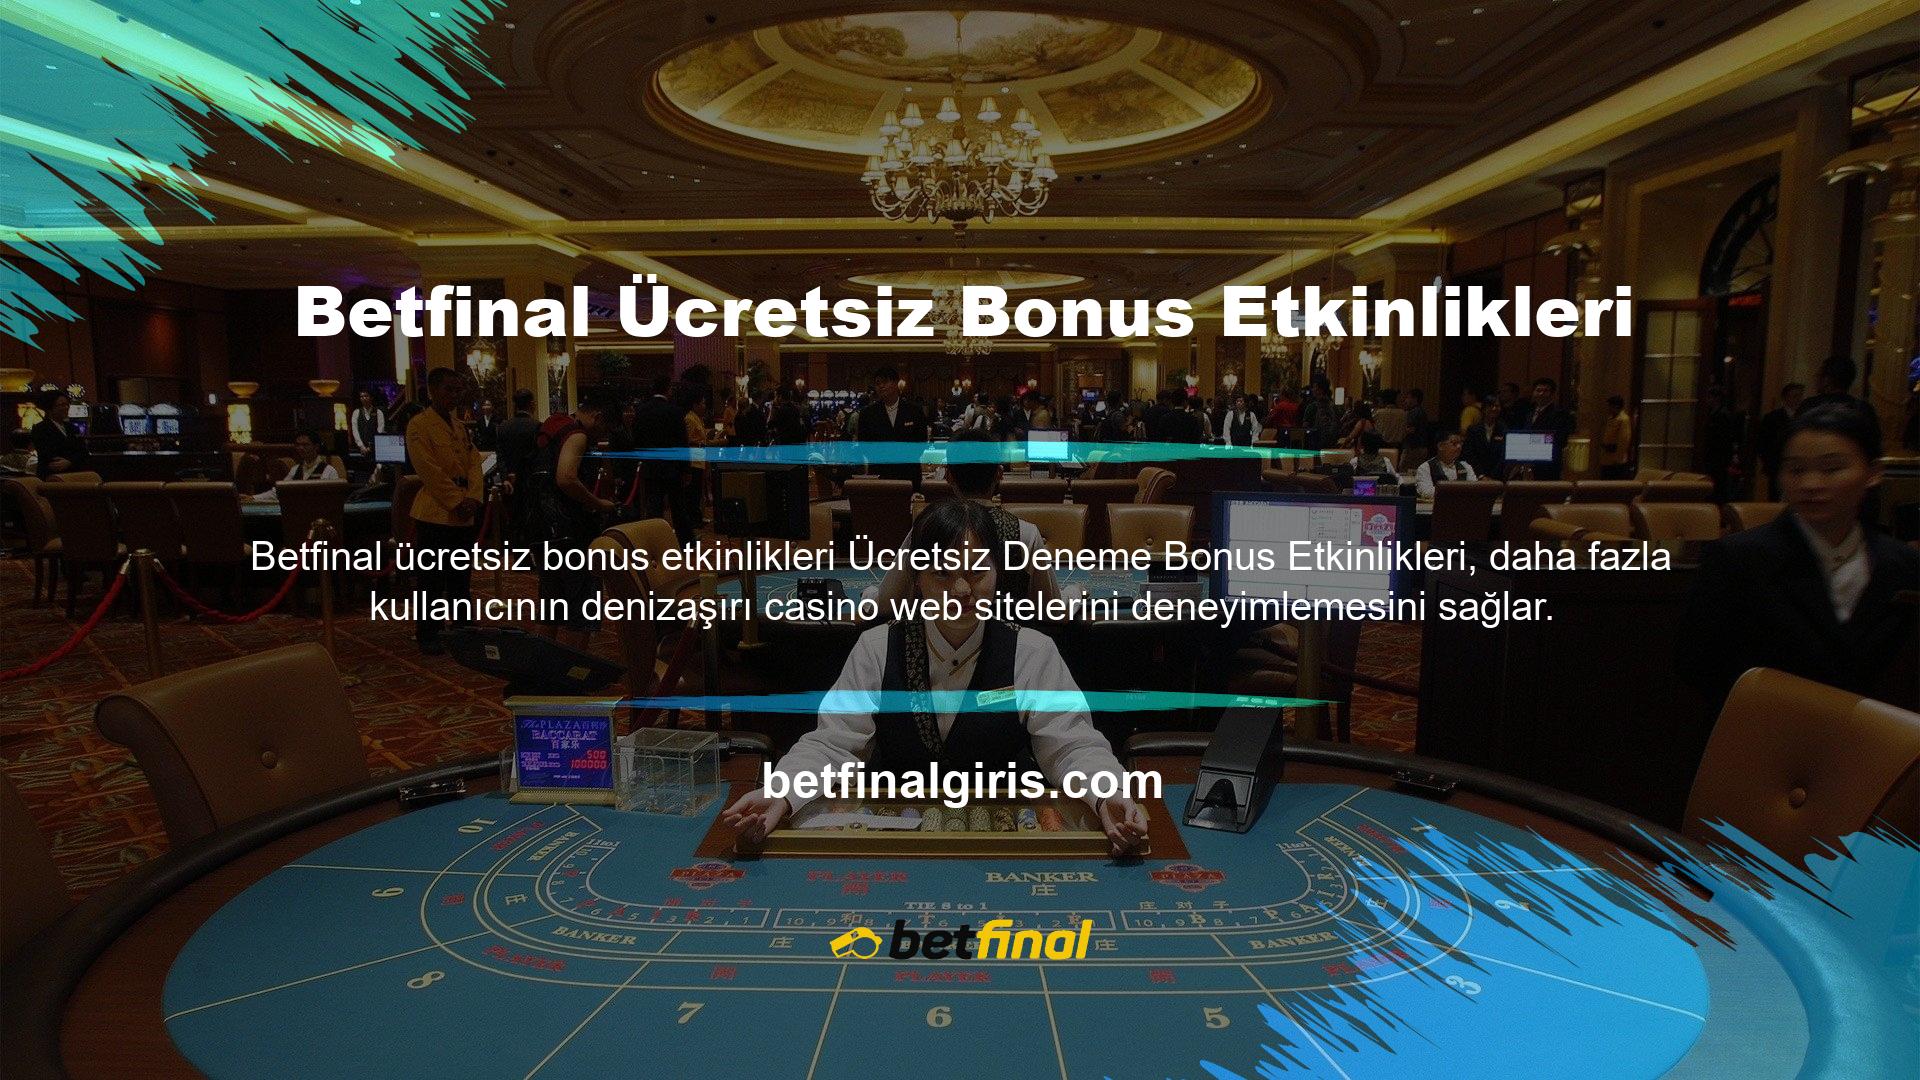 Betfinal, aktif olarak çevrimiçi casino hizmetleri sunmakta ve deneme bonusu kampanyaları ile yeni üyeler çekebilmektedir